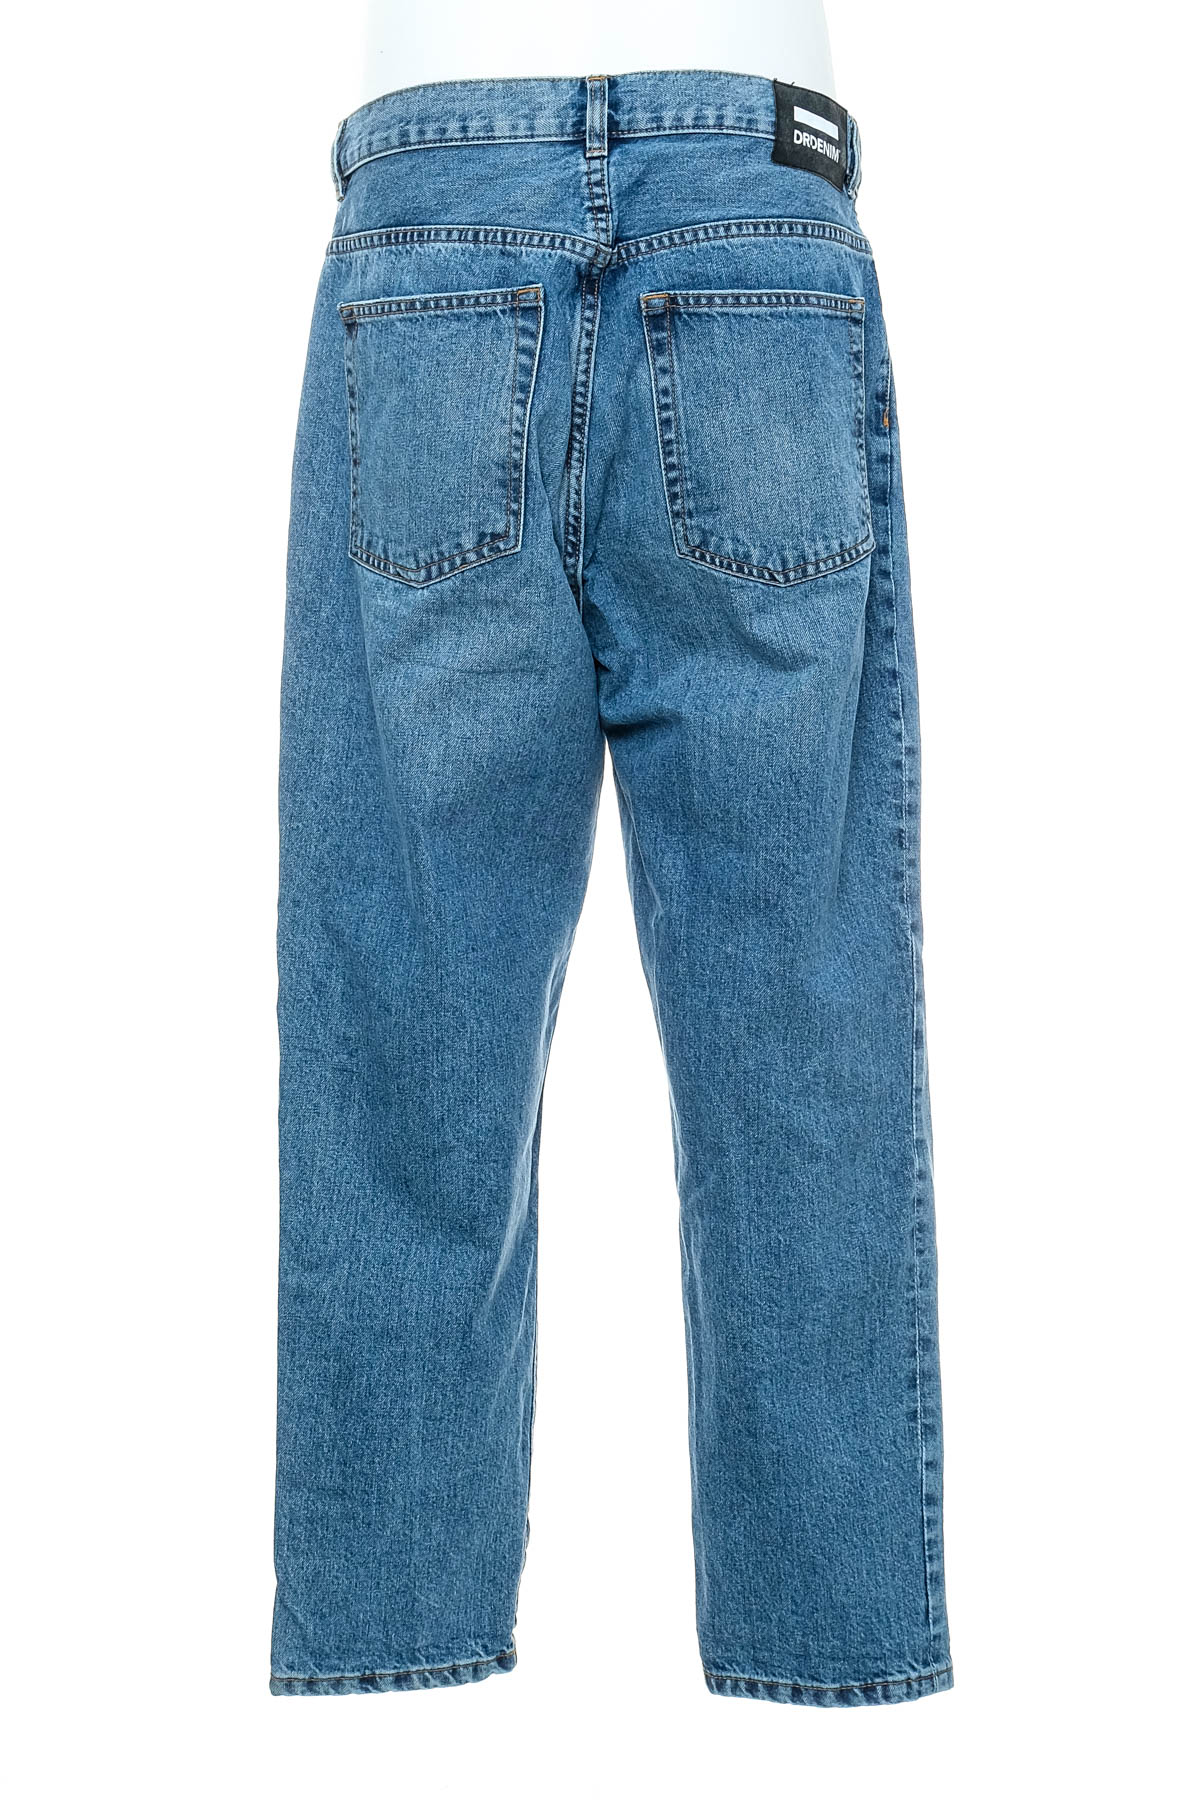 Men's jeans - DR Denim - 1